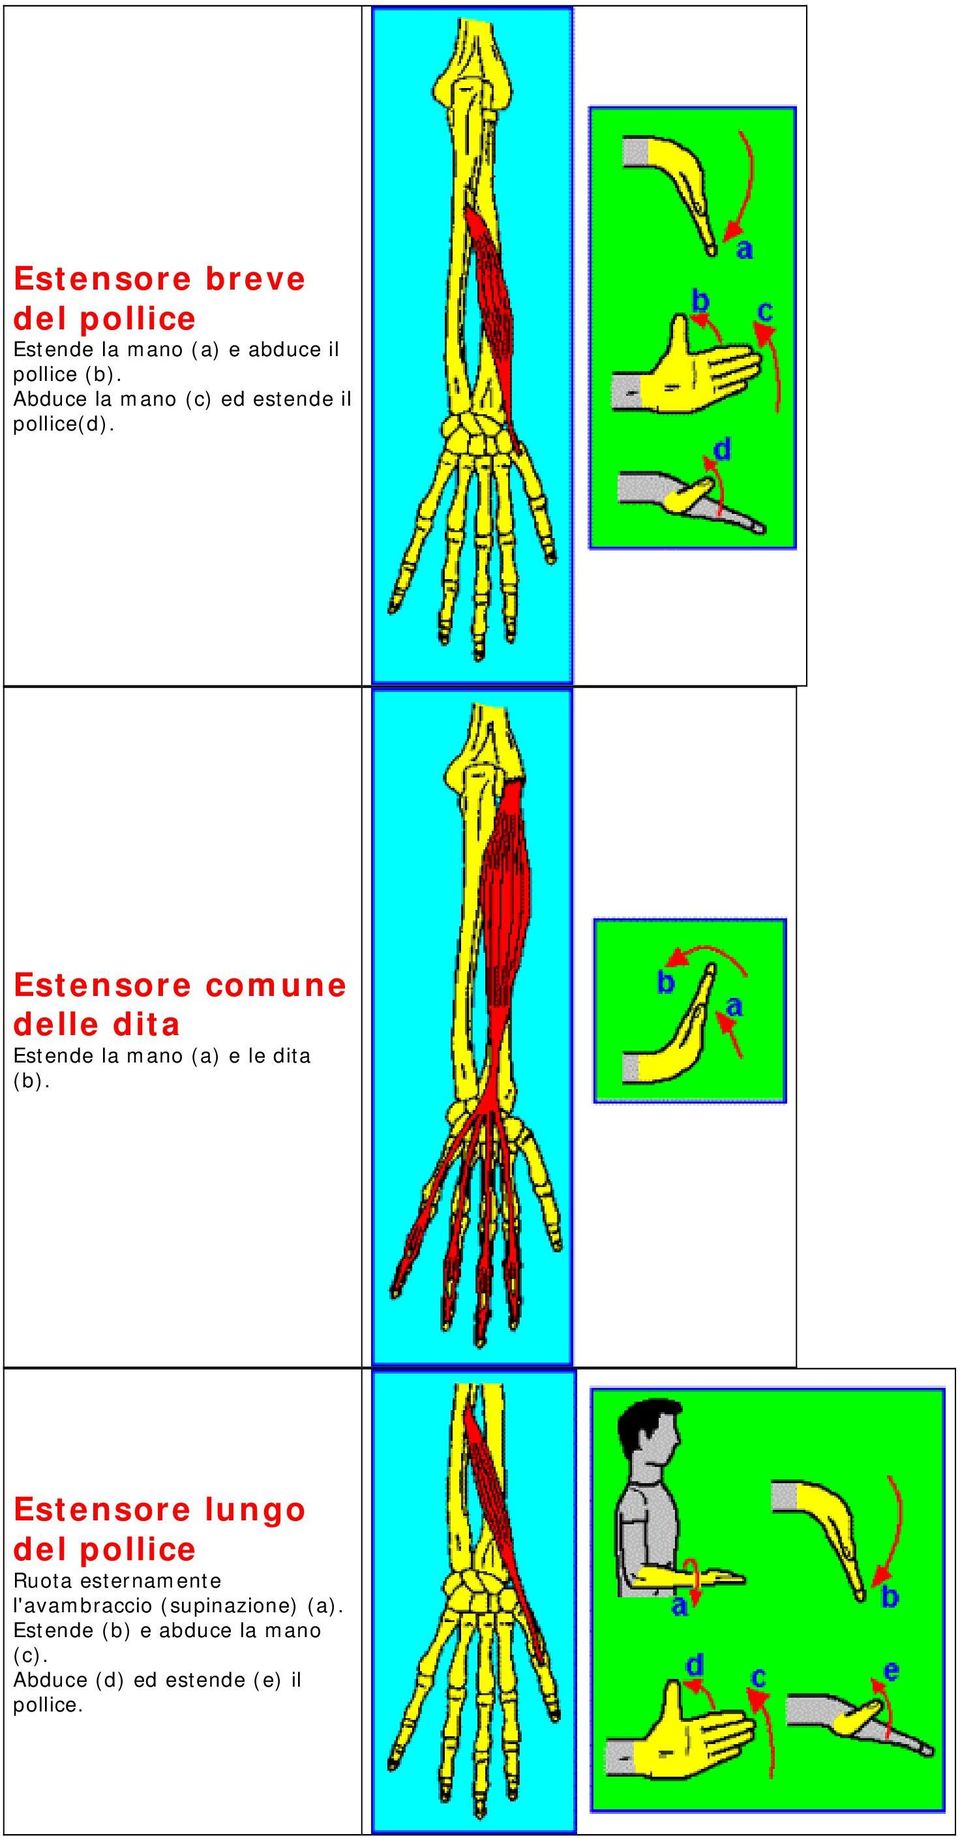 Estensore comune delle dita Estende la mano (a) e le dita (b).